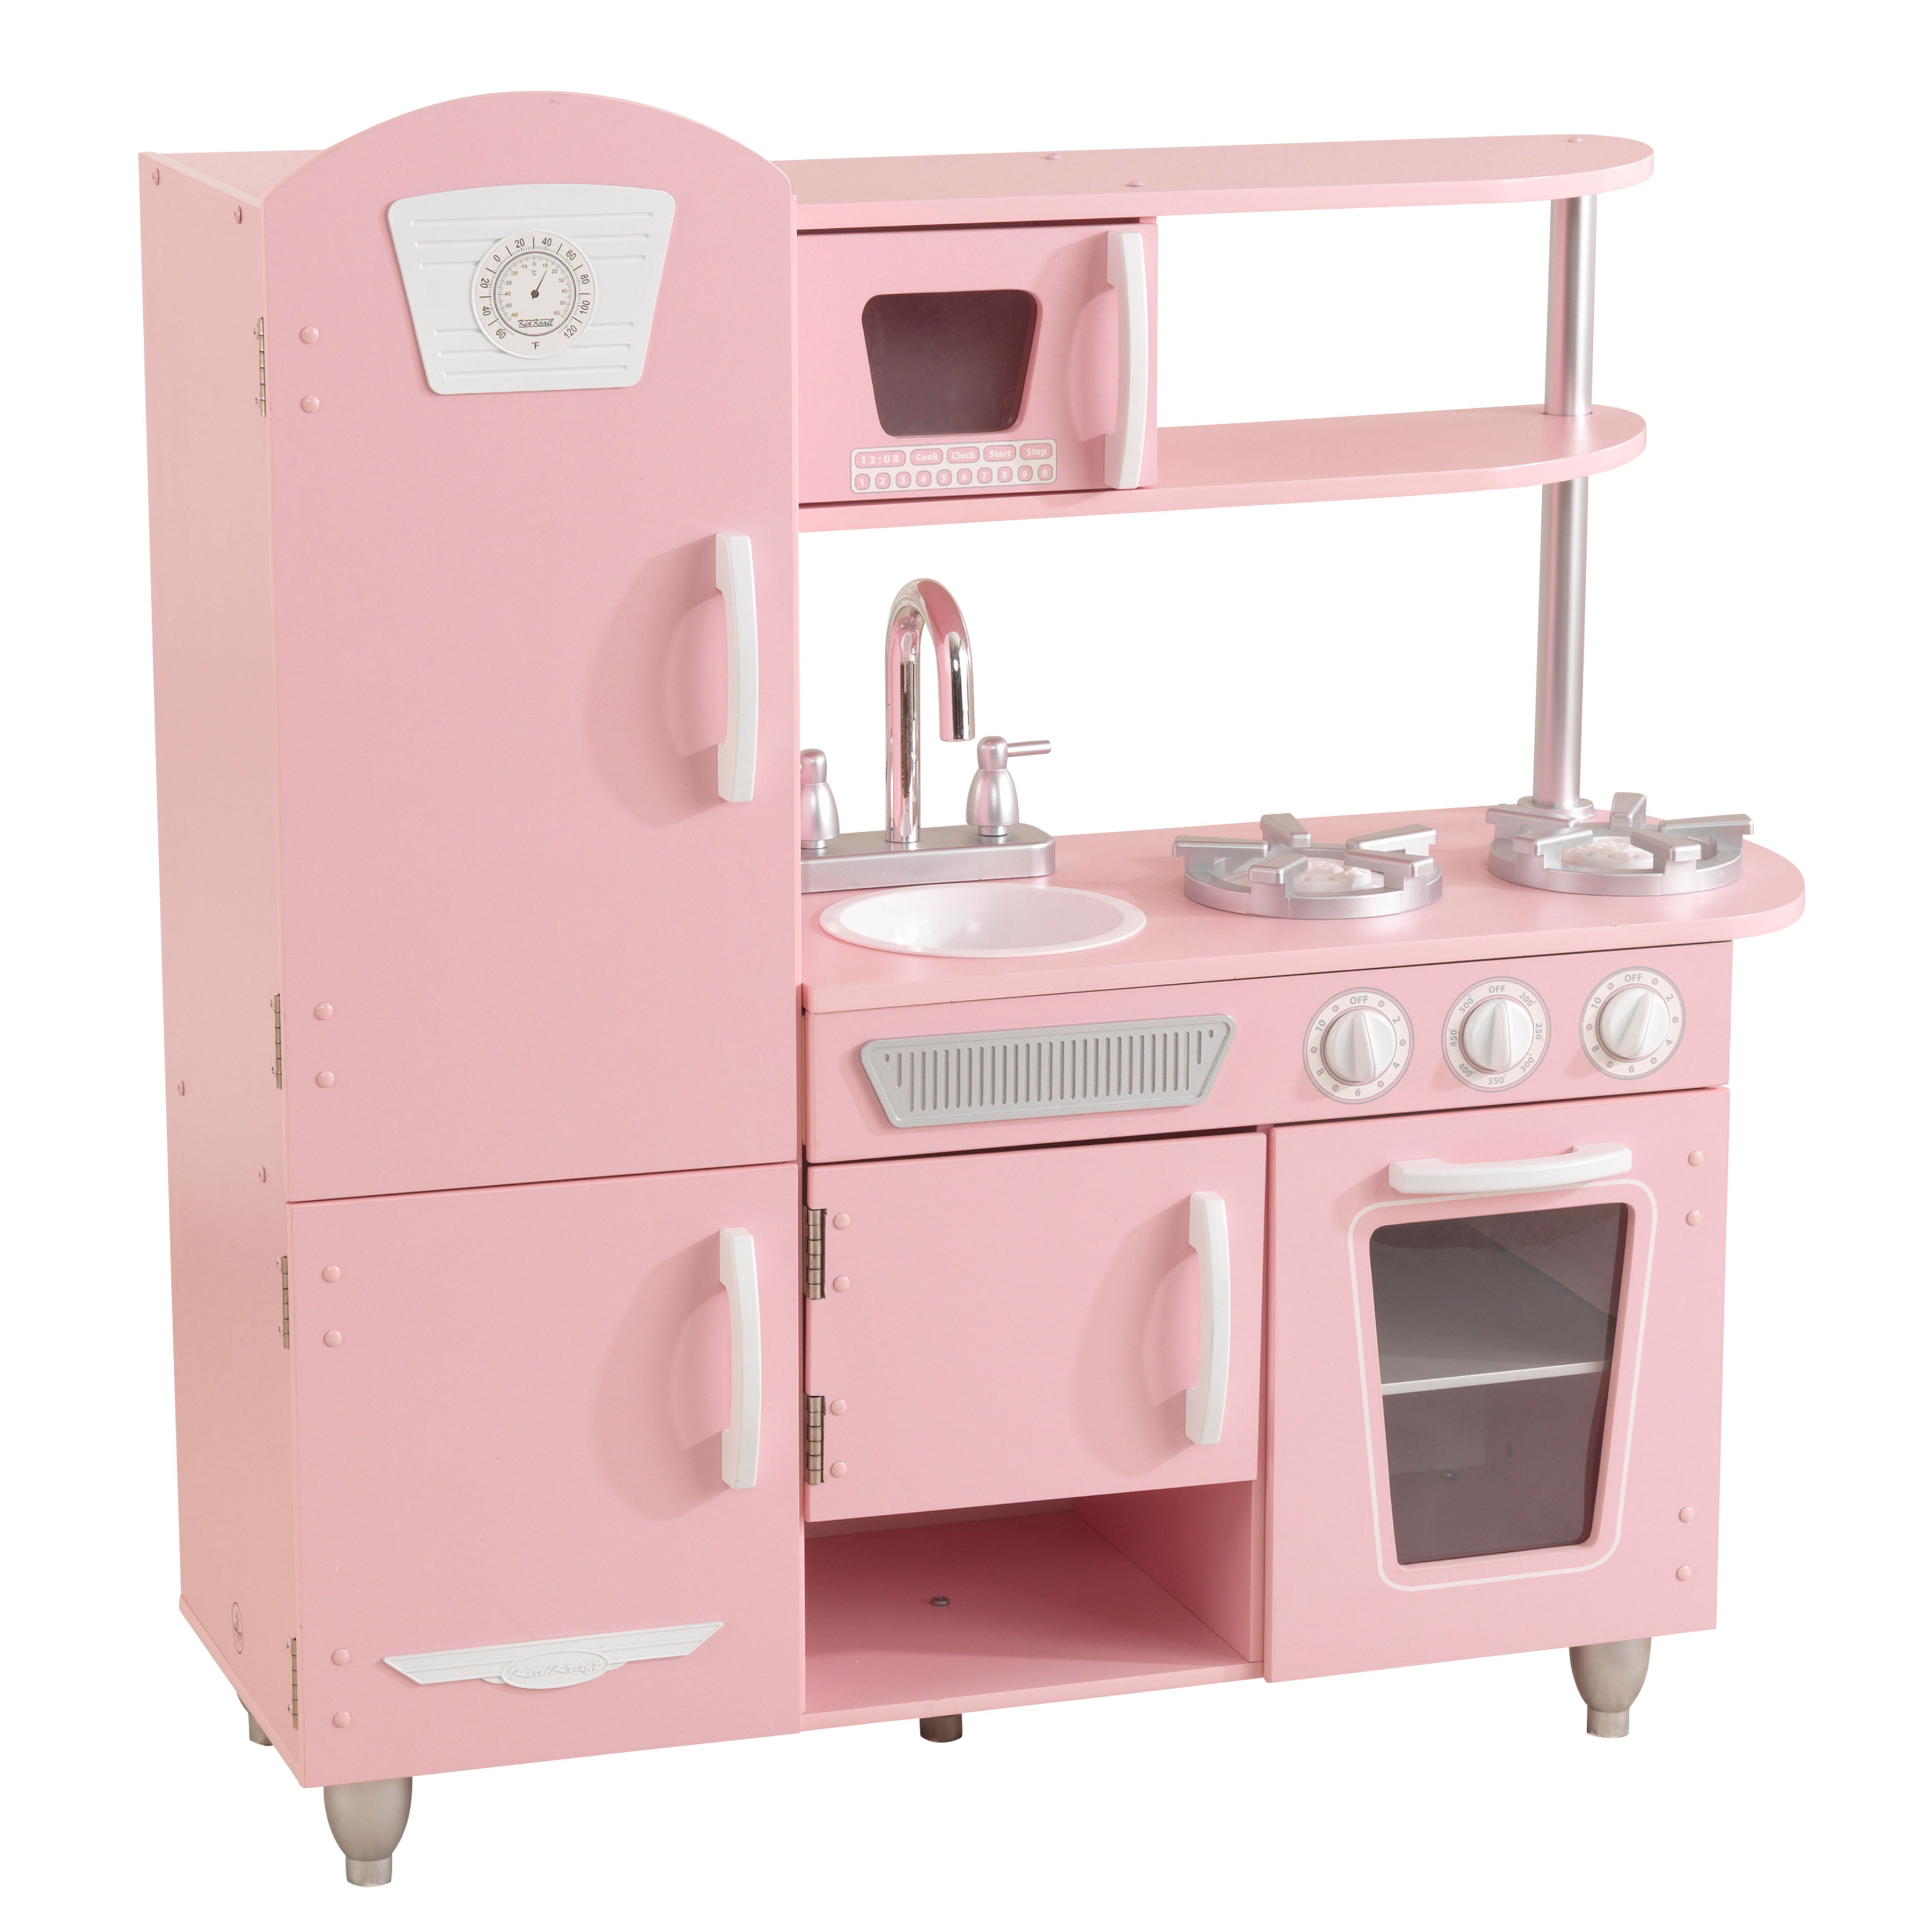 toy kitchen appliances walmart